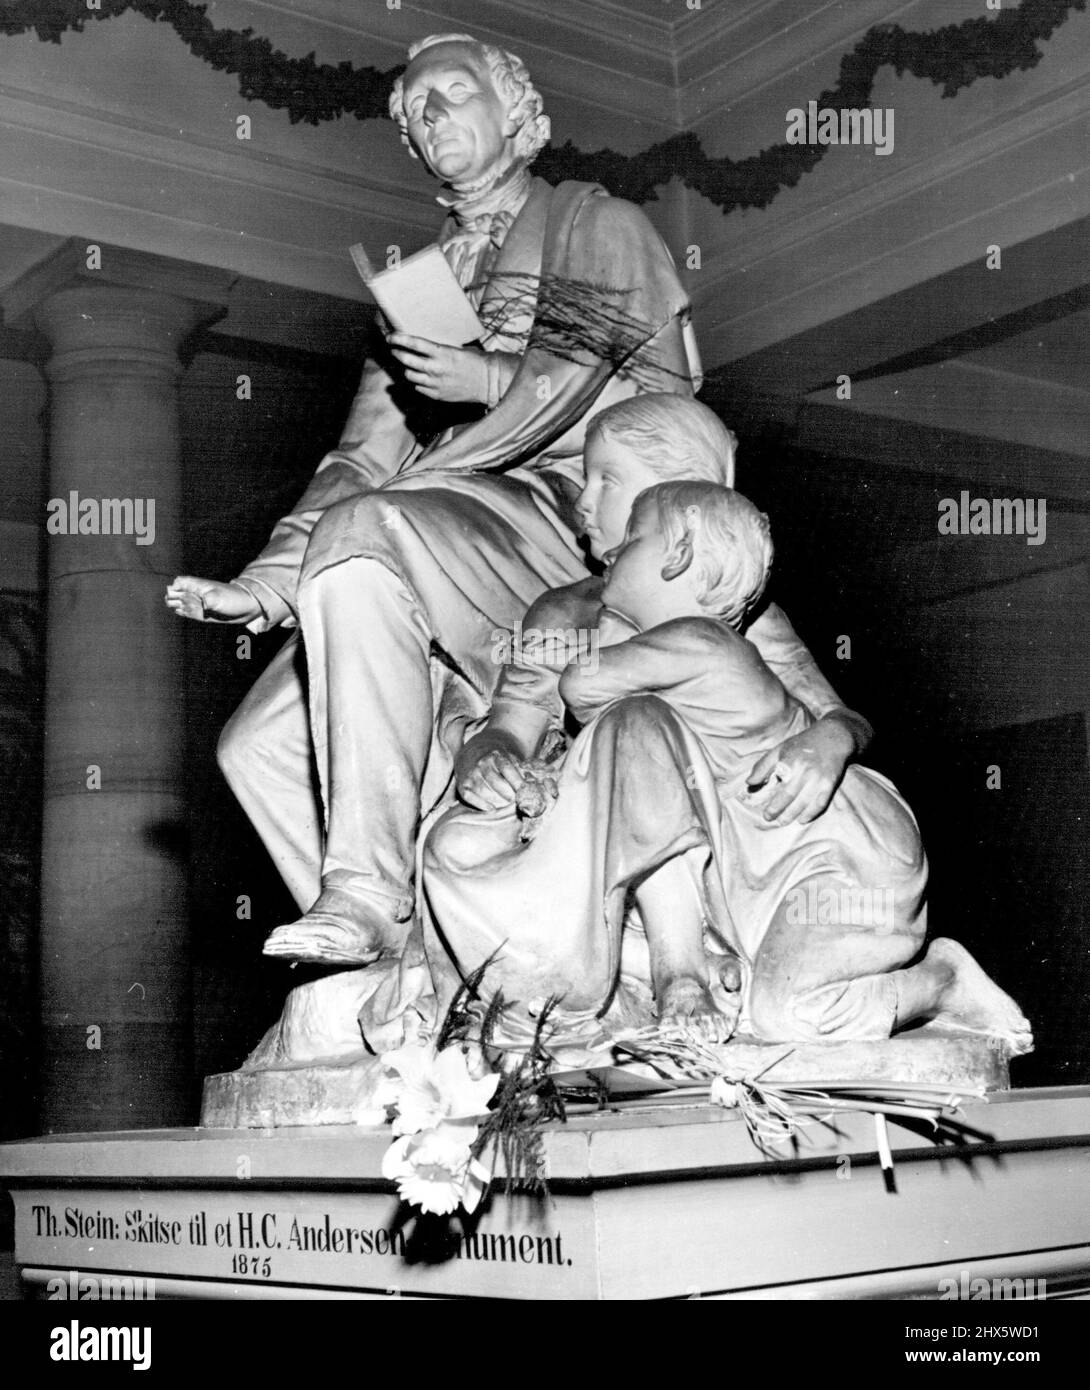 Danes honore Favorite son -- l'un des scrutateurs de contes de fées les plus appréciés au monde, Hans Christian Andersen est commémoré par cette belle statue qui se trouve dans un musée près de son lieu de naissance à Odense, au Danemark. 11 avril 1952. (Photo de United Press photo). Banque D'Images